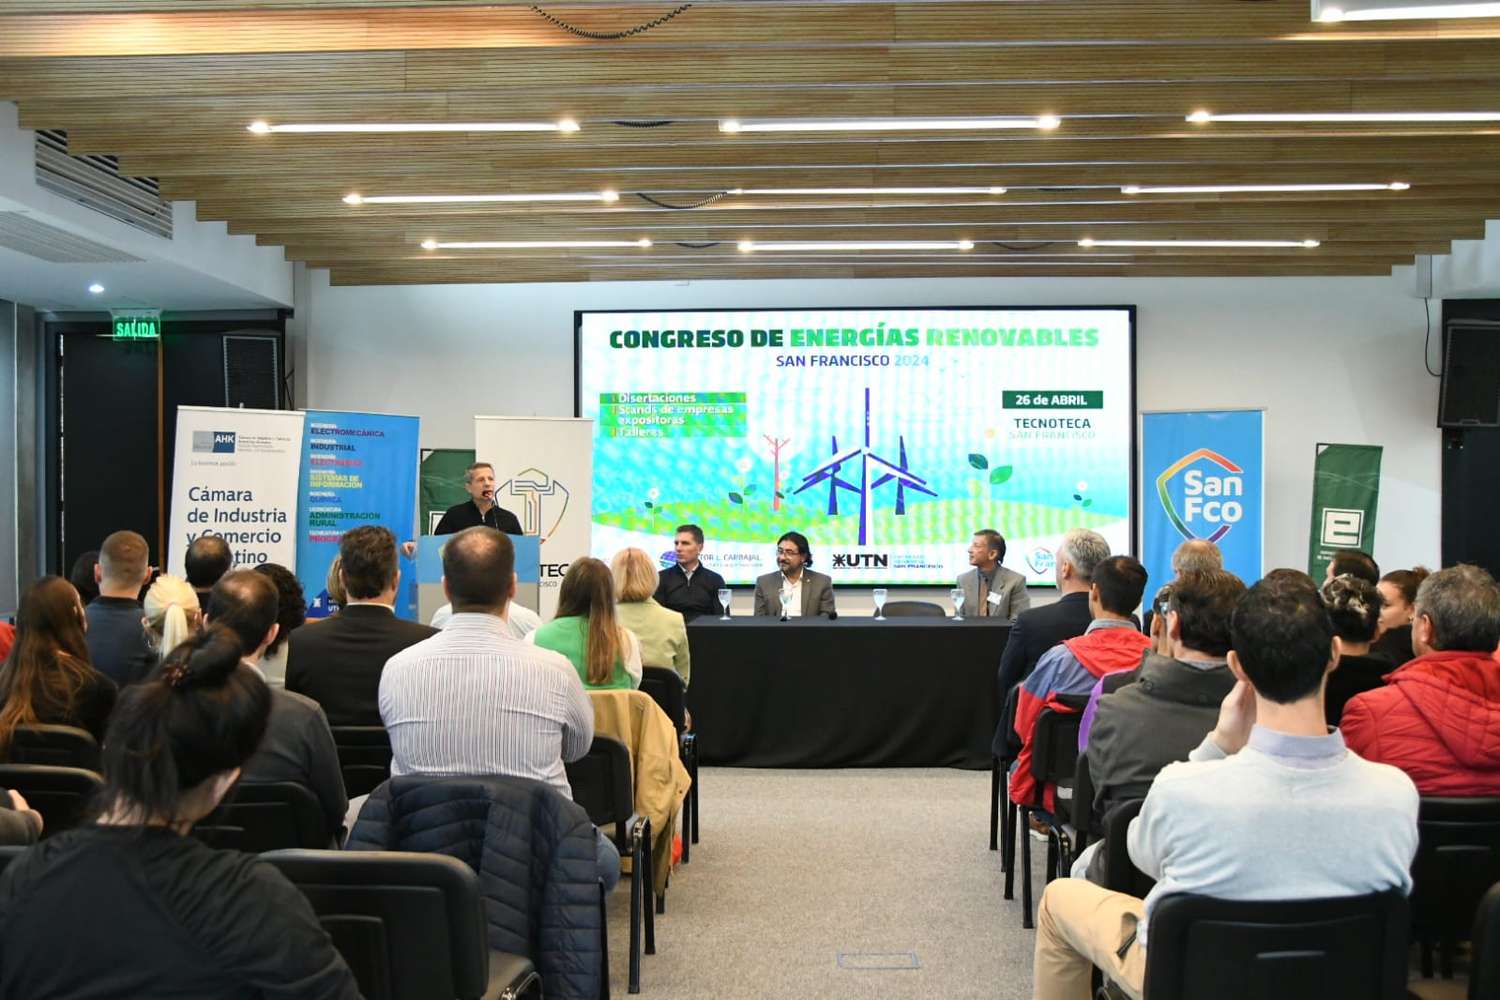 Con una destacada participación de público, conferencistas y autoridades, se llevó a cabo la segunda edición del Congreso de Energías Renovables en la Tecnoteca.